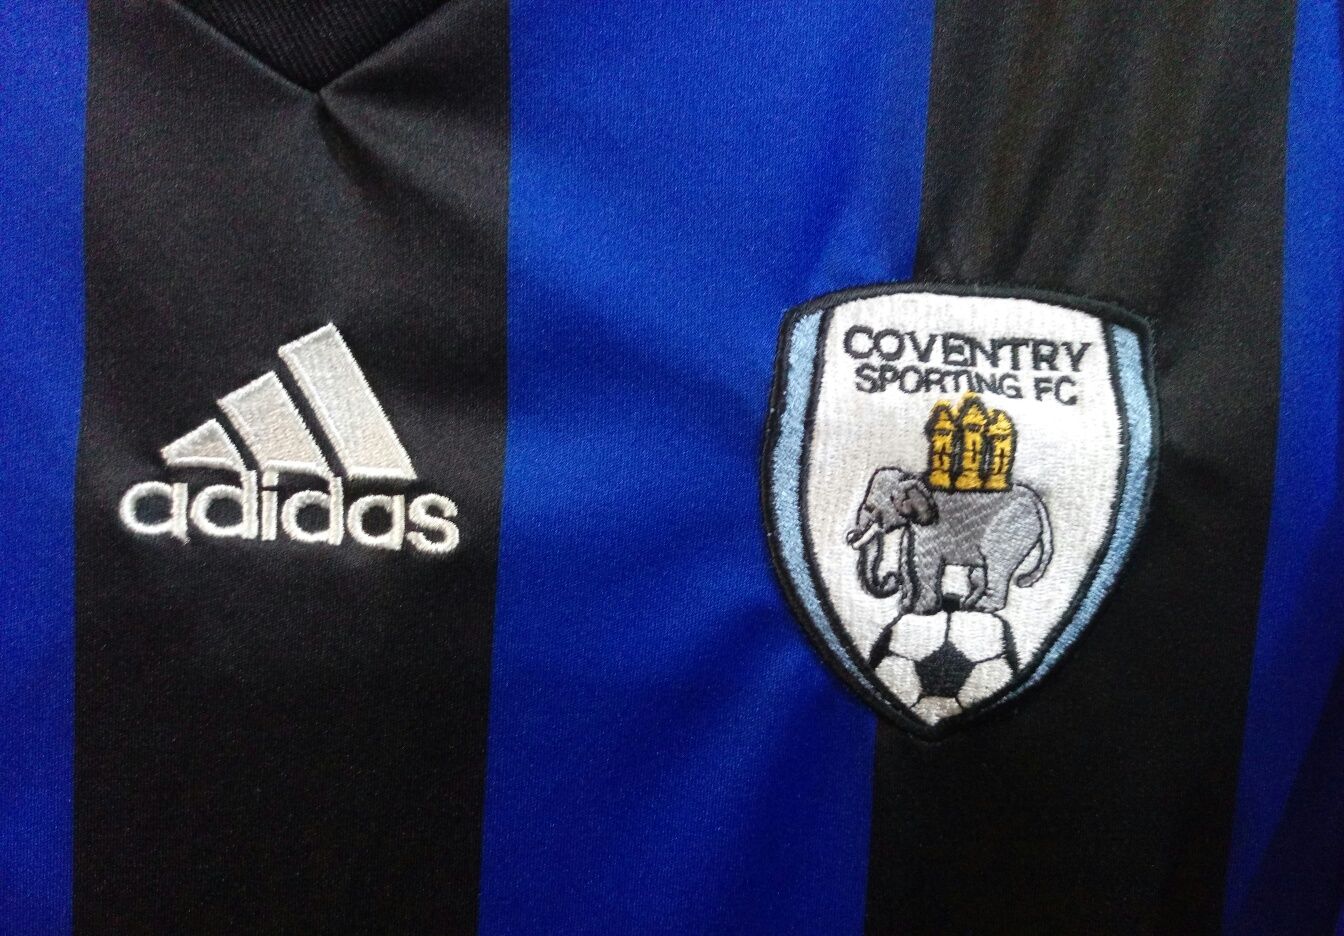 Оригинал спортивная футбольная футболка Adidas Coventry Sporting FC